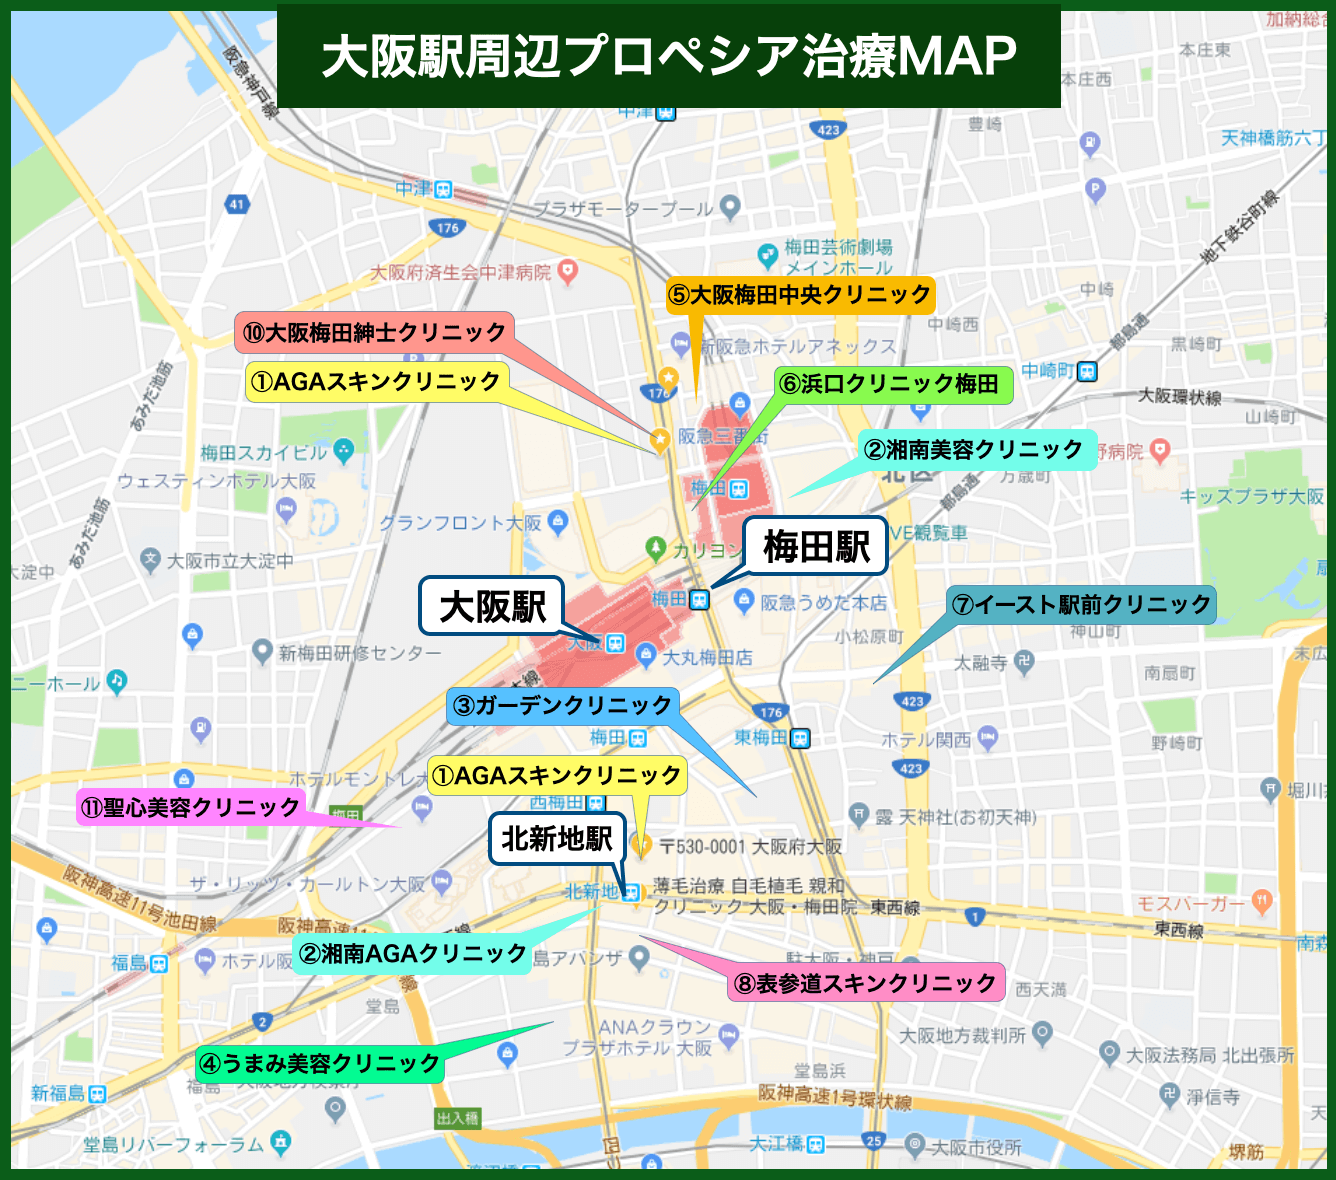 大阪駅周辺 プロペシア治療MAP